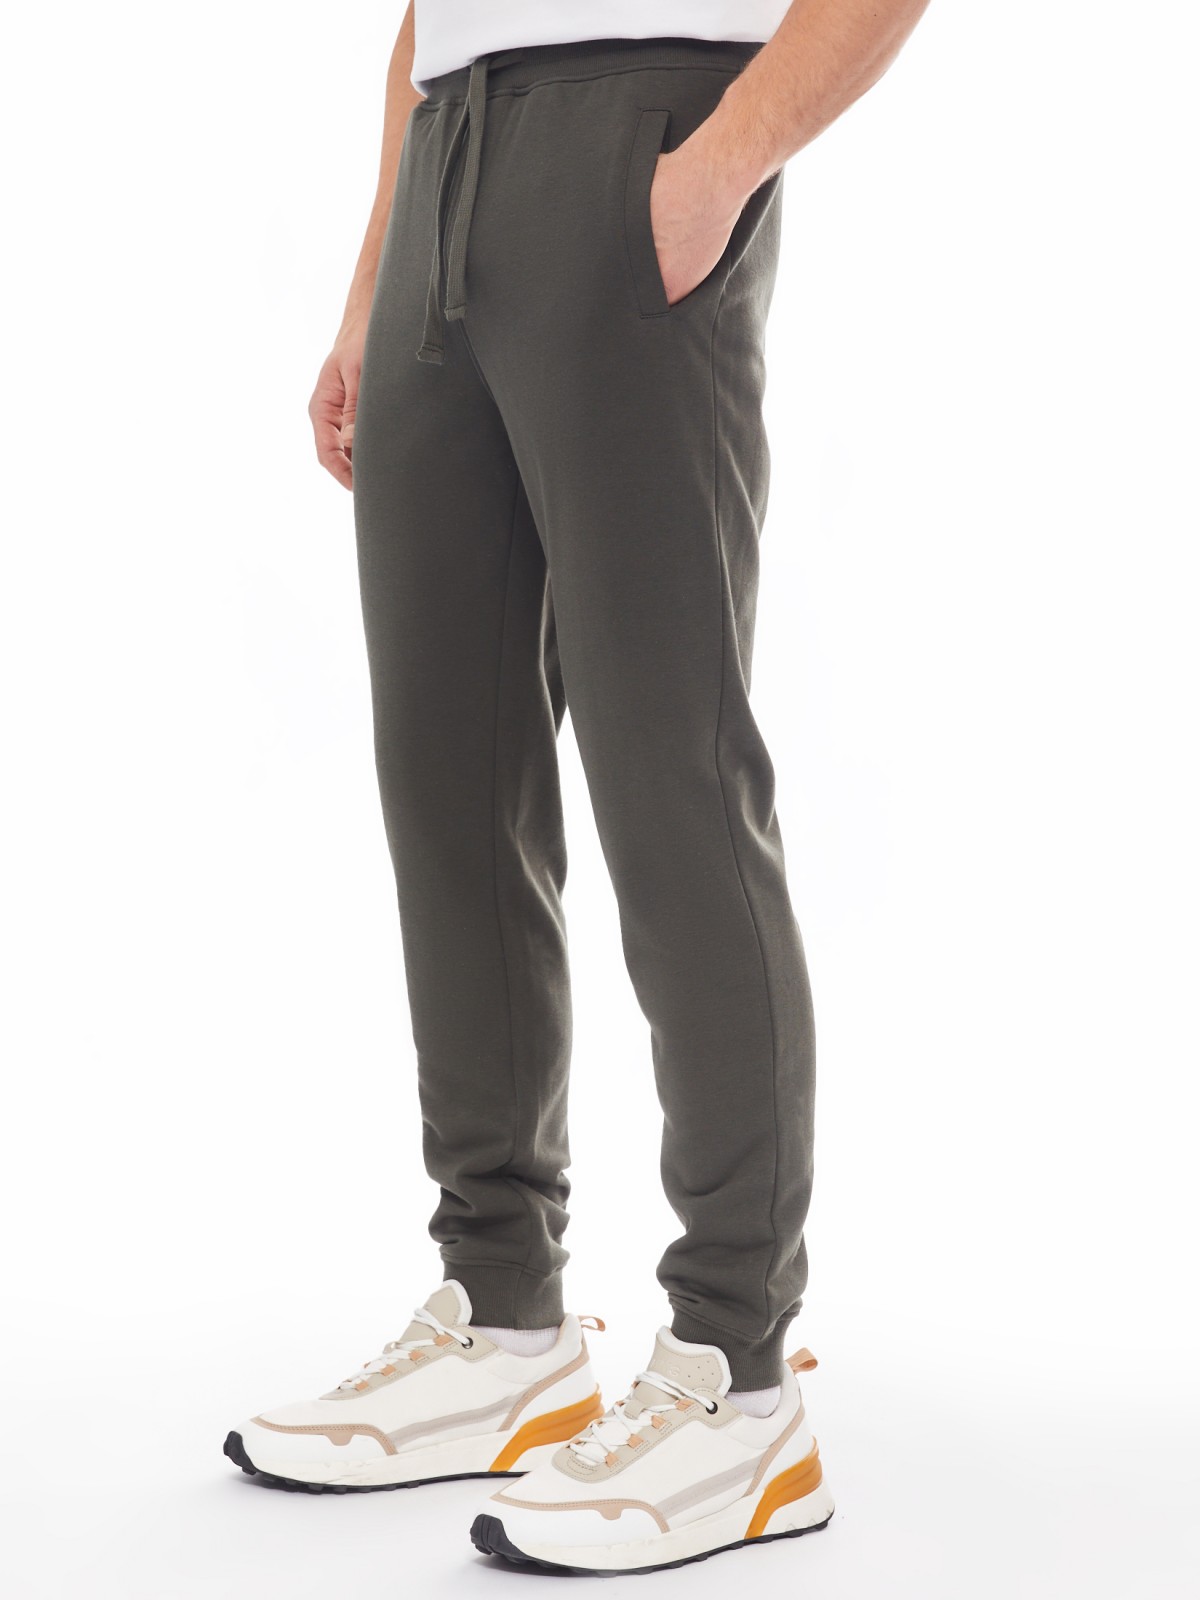 Трикотажные брюки-джоггеры в спортивном стиле zolla 014137675022, цвет хаки, размер M - фото 3